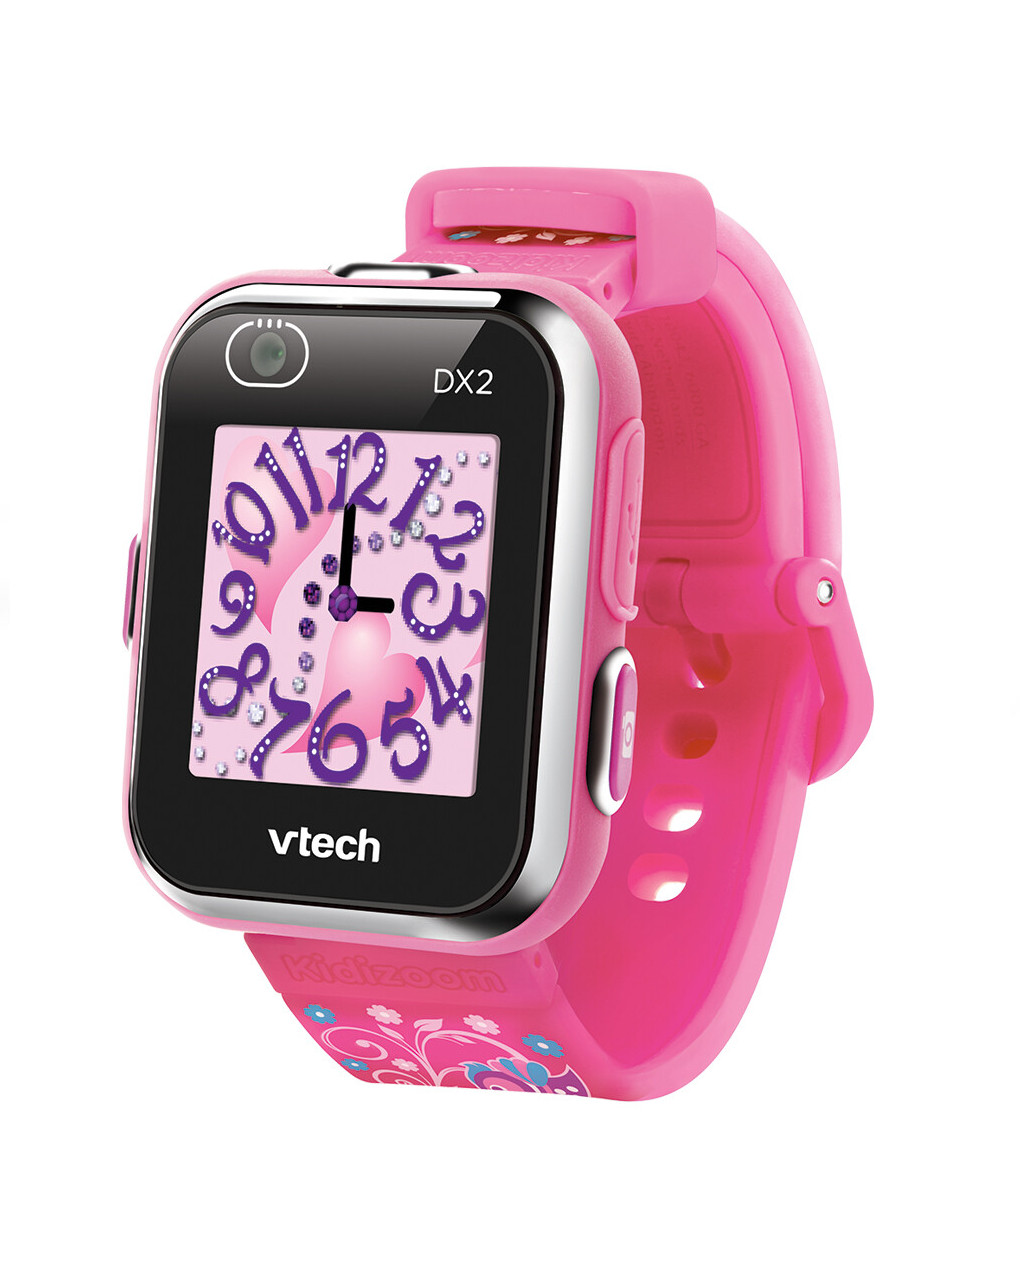 Kidizoom ® smartwatch dx2 rosa 5-13 anni - vtech - VTECH